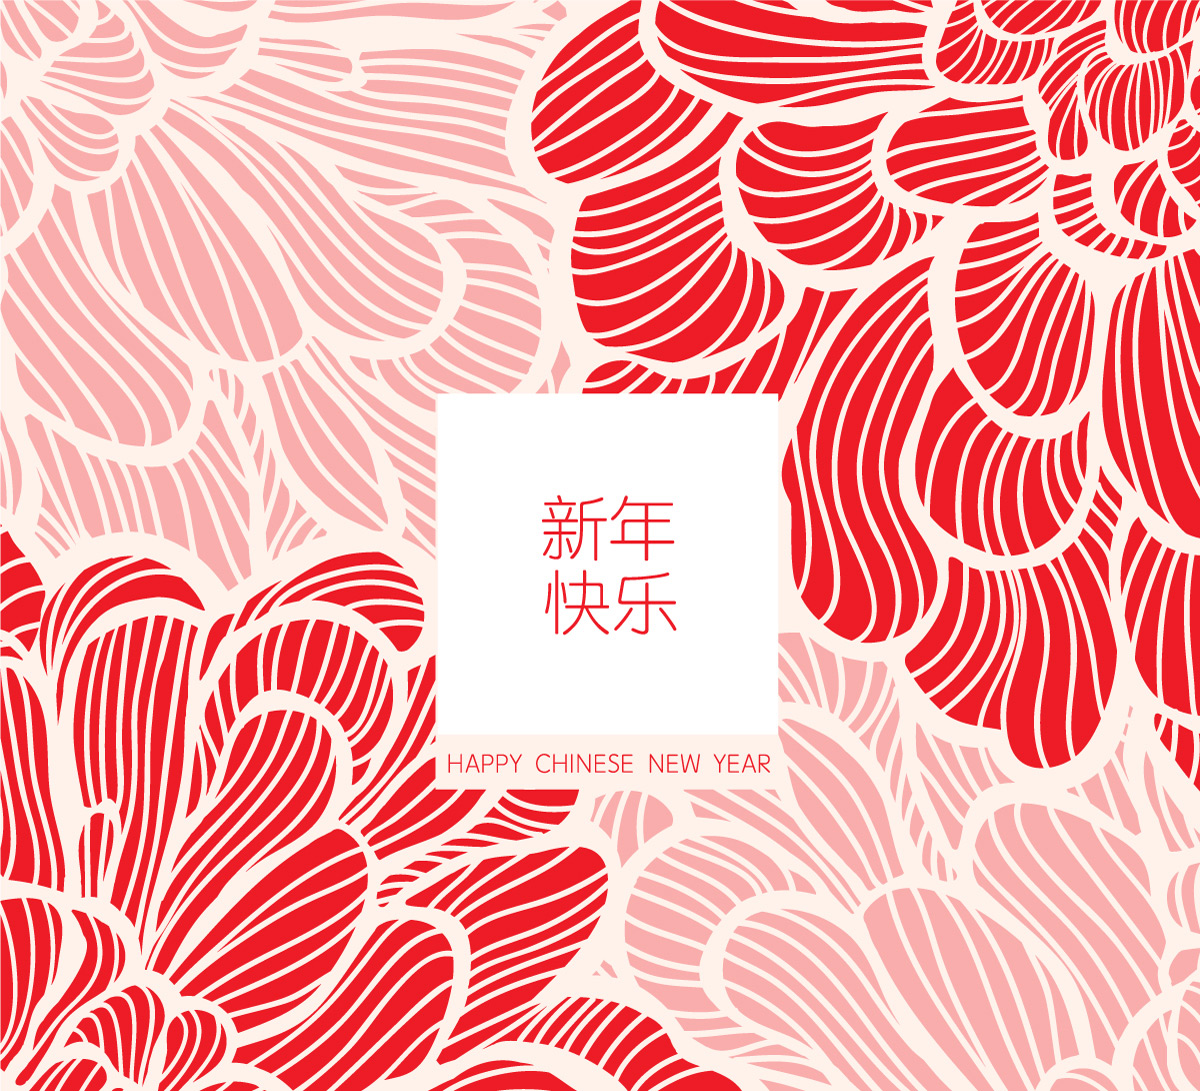 手绘版画风格的大红花新年矢量背景图案 节日图片素材下载 九图素材网